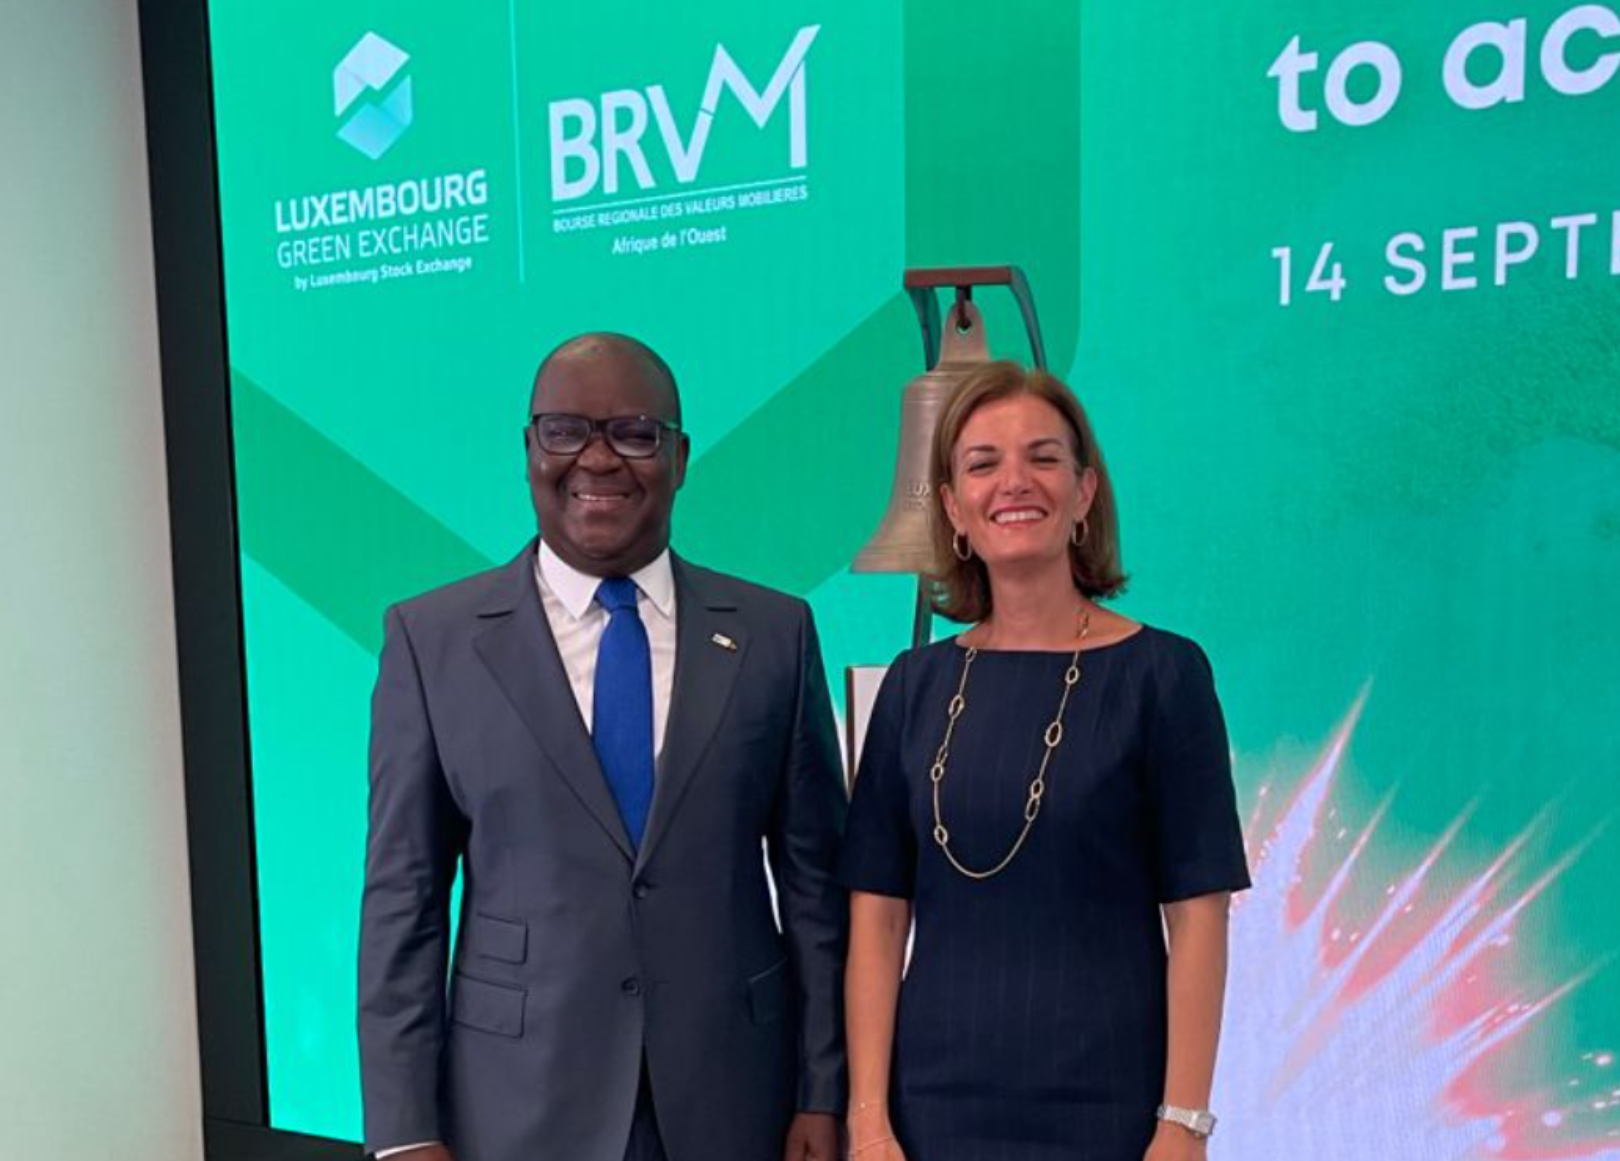 UEMOA : La BRVM veut créer un marché obligataire dédié aux obligations vertes, sociales, durables